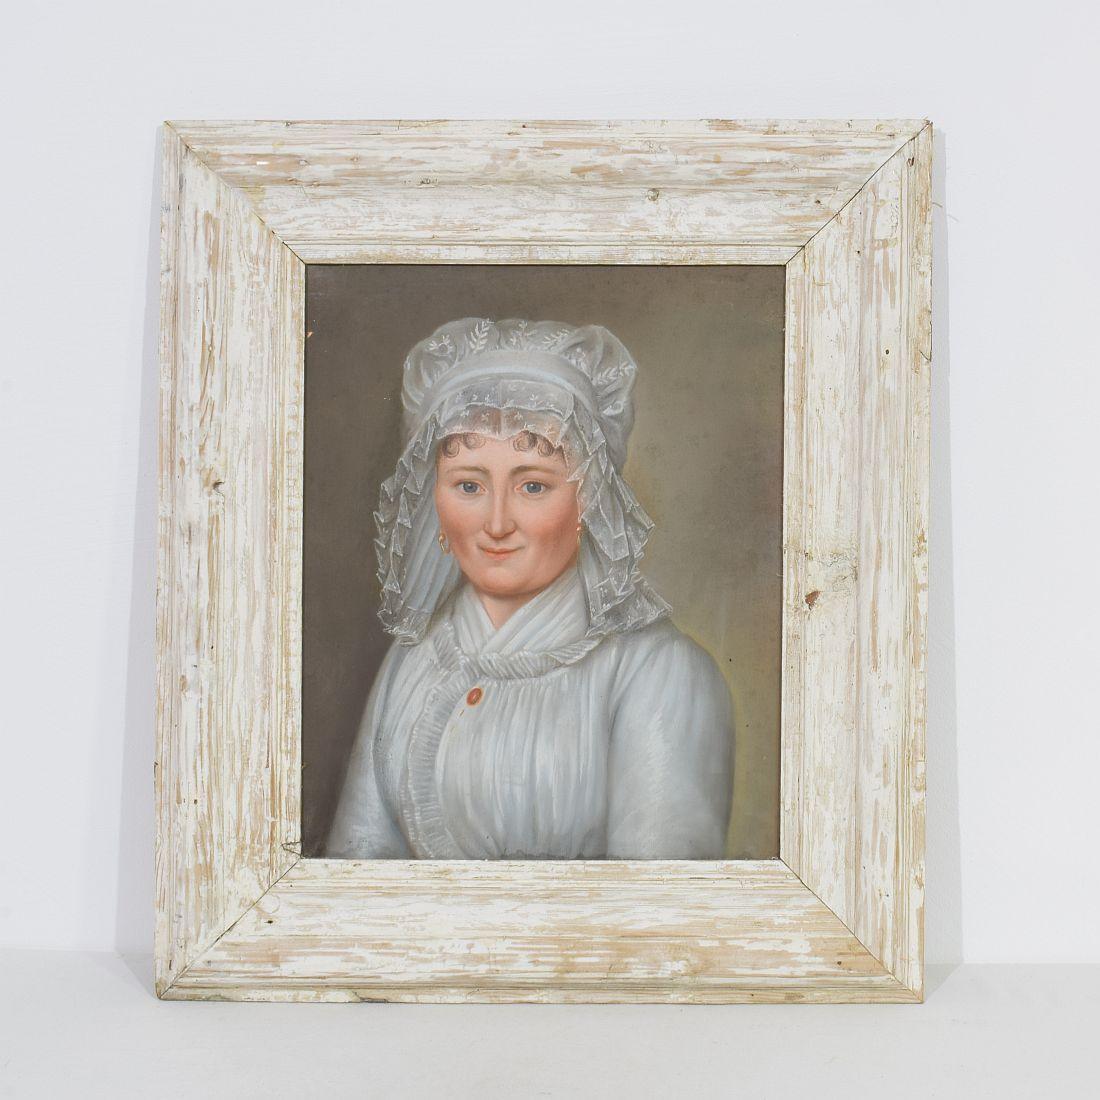 Joli portrait au pastel représentant une jeune femme. Merveilleux cadre en bois usé par les intempéries et son vieux verre,
France, XVIIIe siècle. Vieillissement, petites pertes.